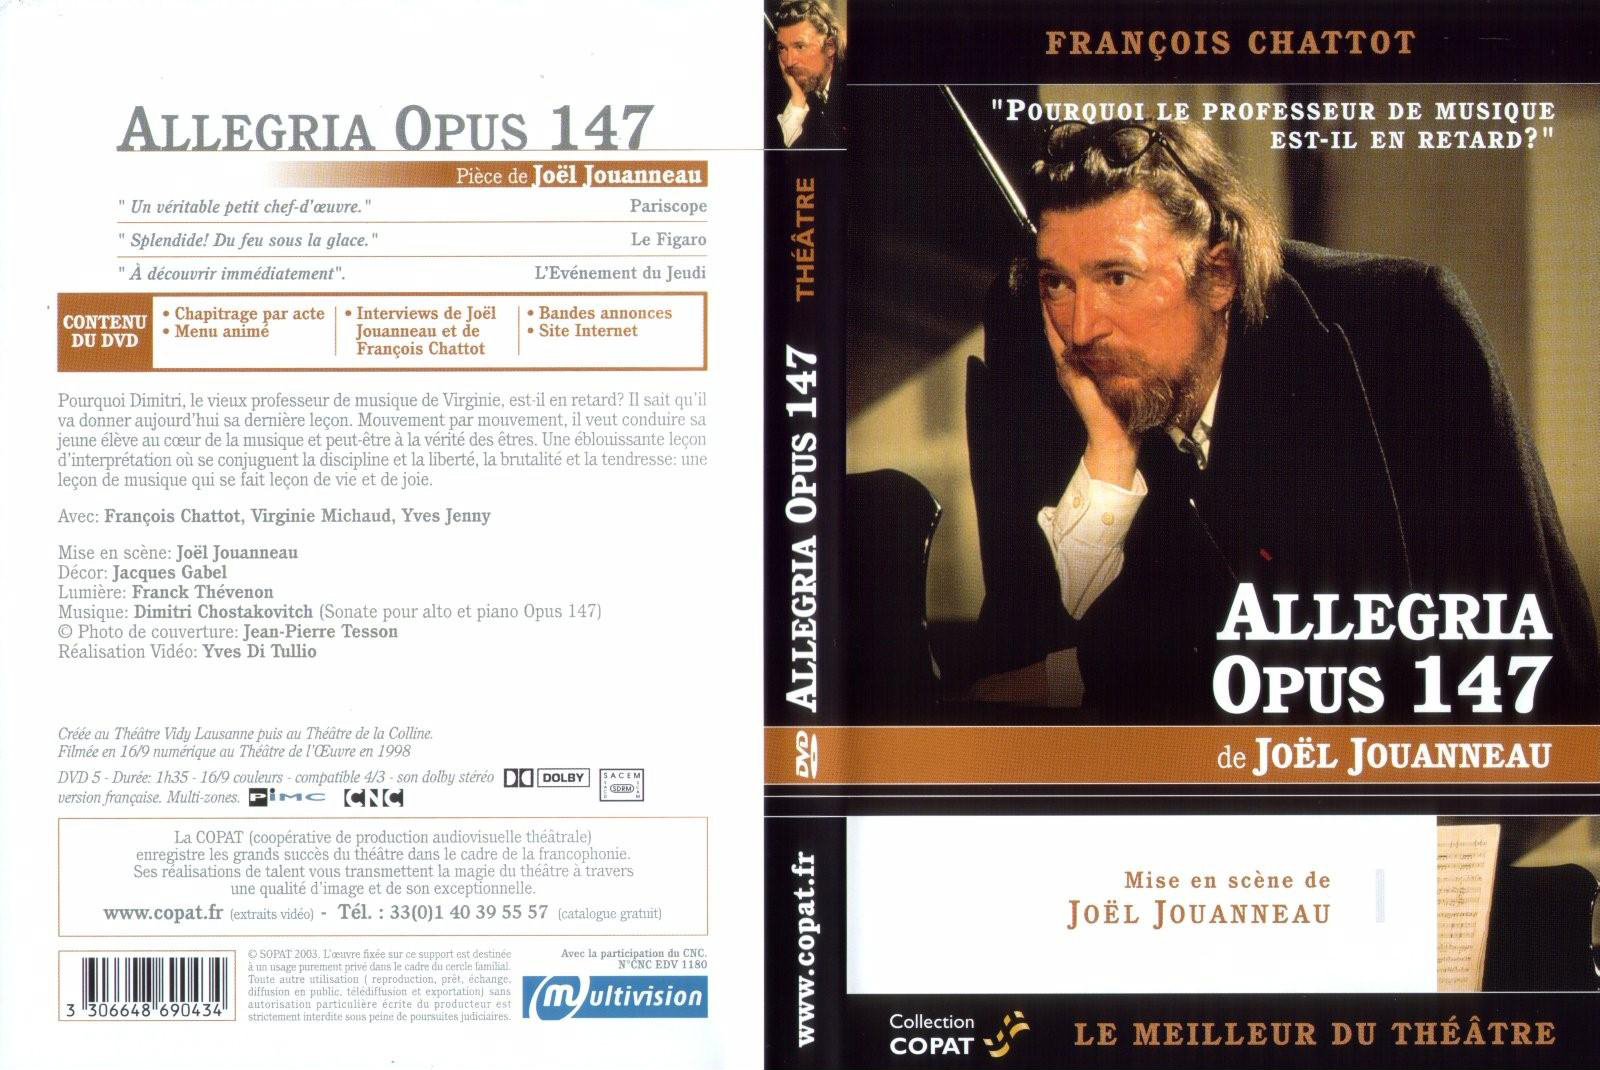 Jaquette DVD Allegria opus 147